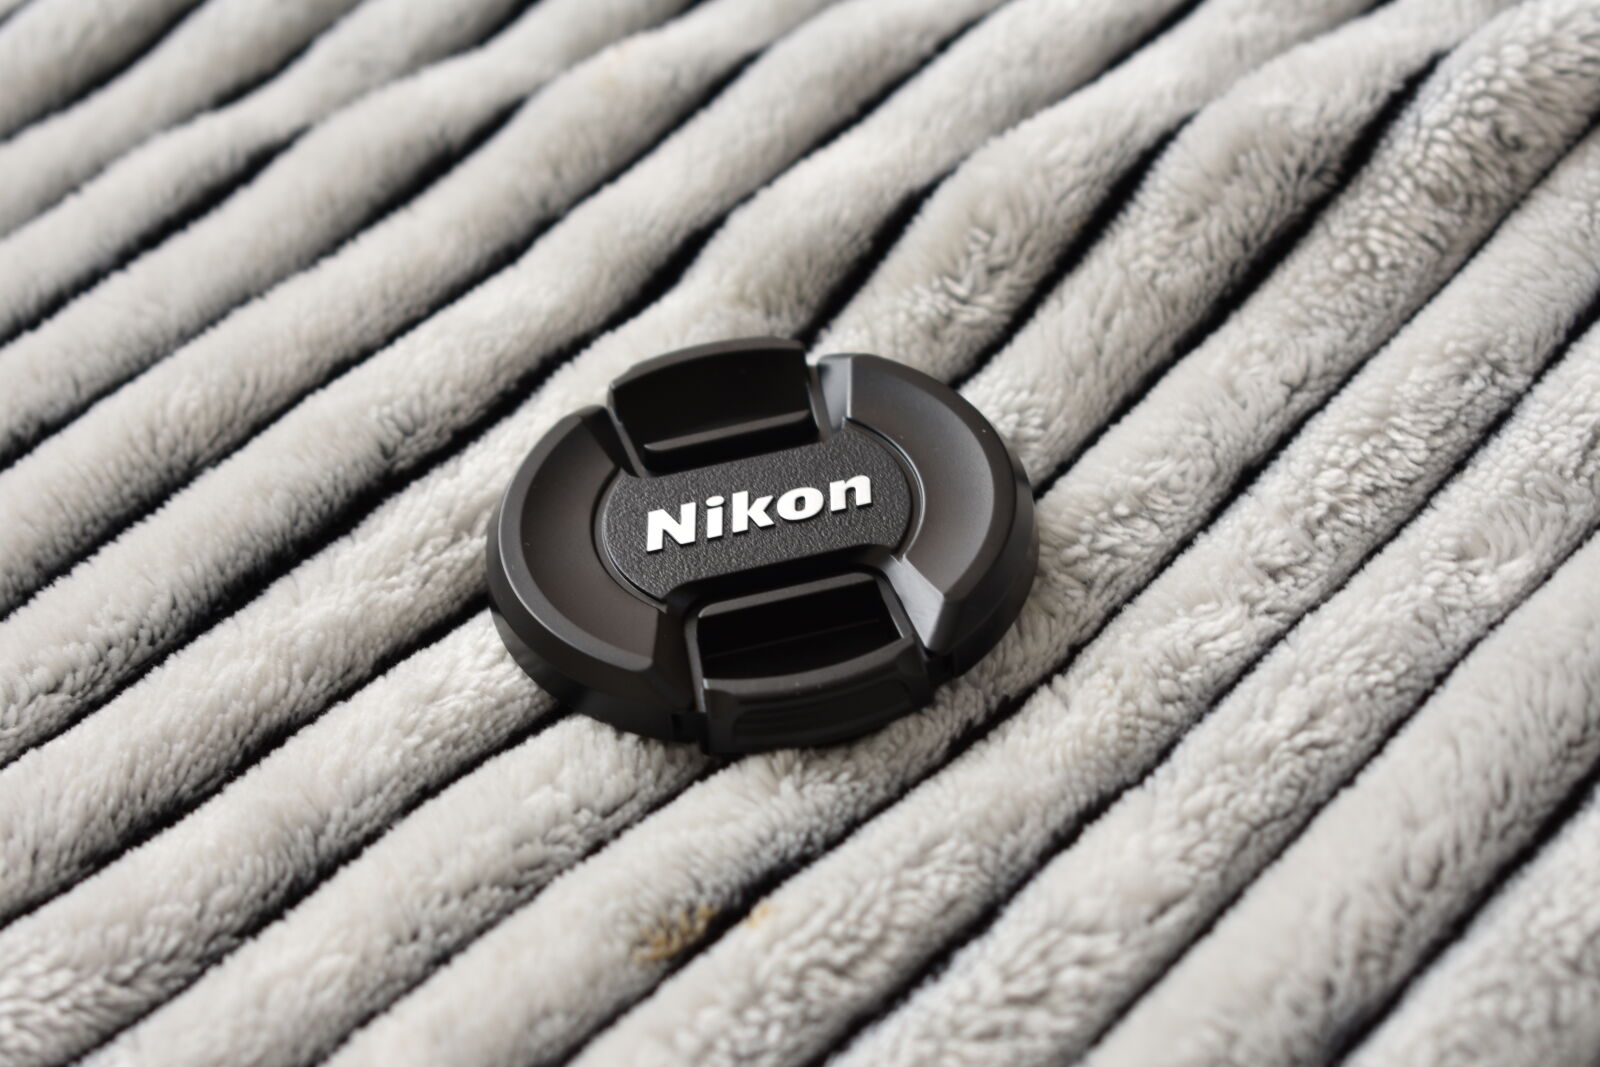 Nikon D3400 sample photo. Black, nikon, dslr, camera photography